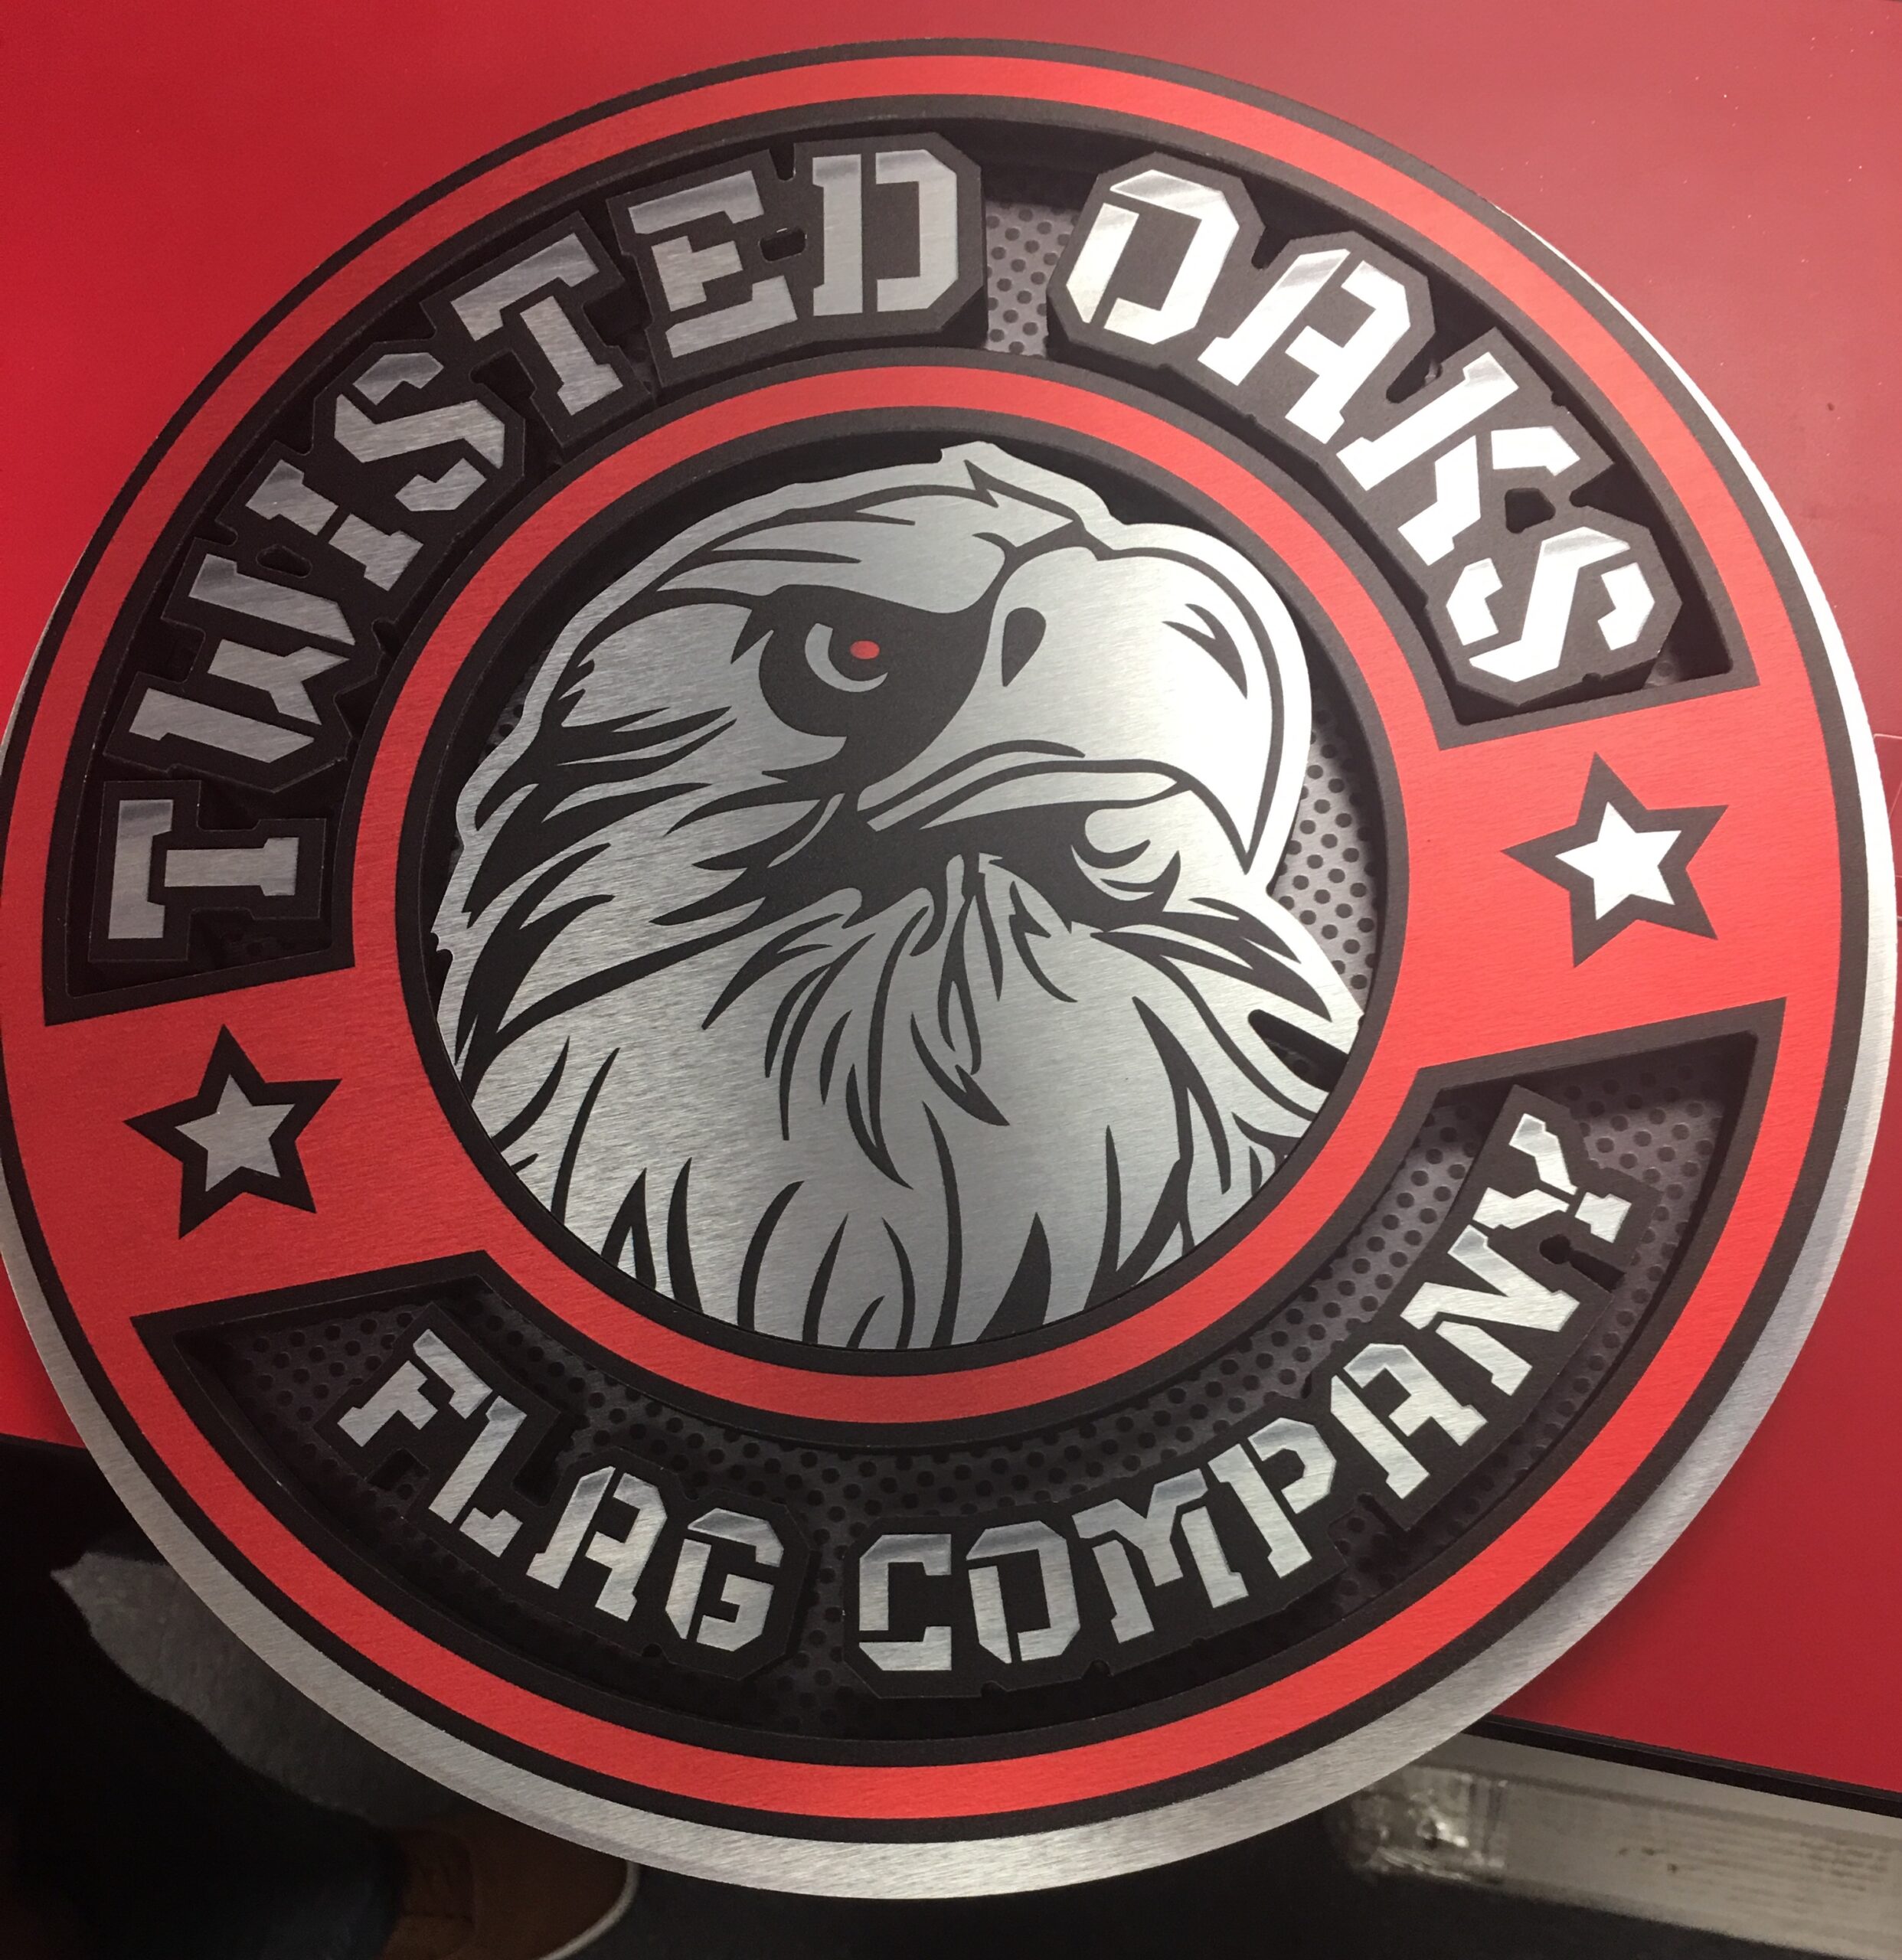 3D-twisted-oaks-flag-co